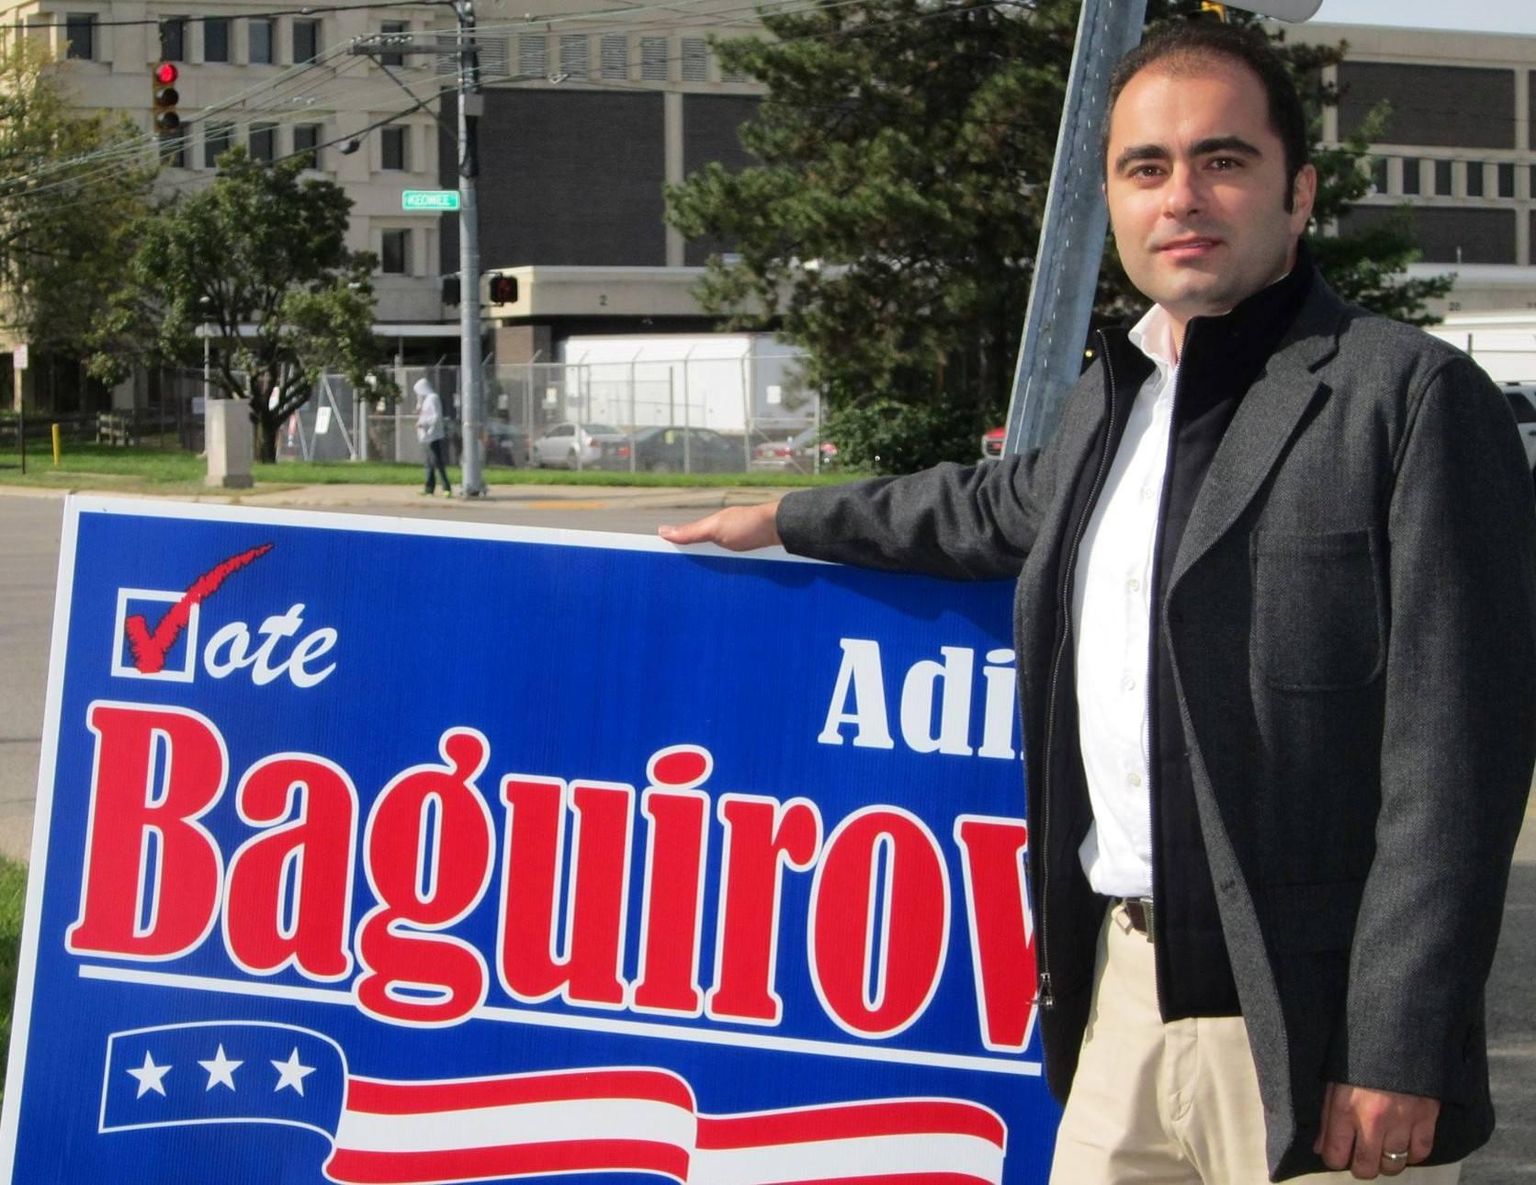 Aserbaidžaani päritolu USA ärimees ja lobist Adil Baguirov on oma kodukandis Daytonis tegev kohaliku tasandi poliitikas ja plaanis kandideerida vabariiklaste ridades ka Ohio osariigi senatisse. FOTO: Adil Baguirov/Facebook